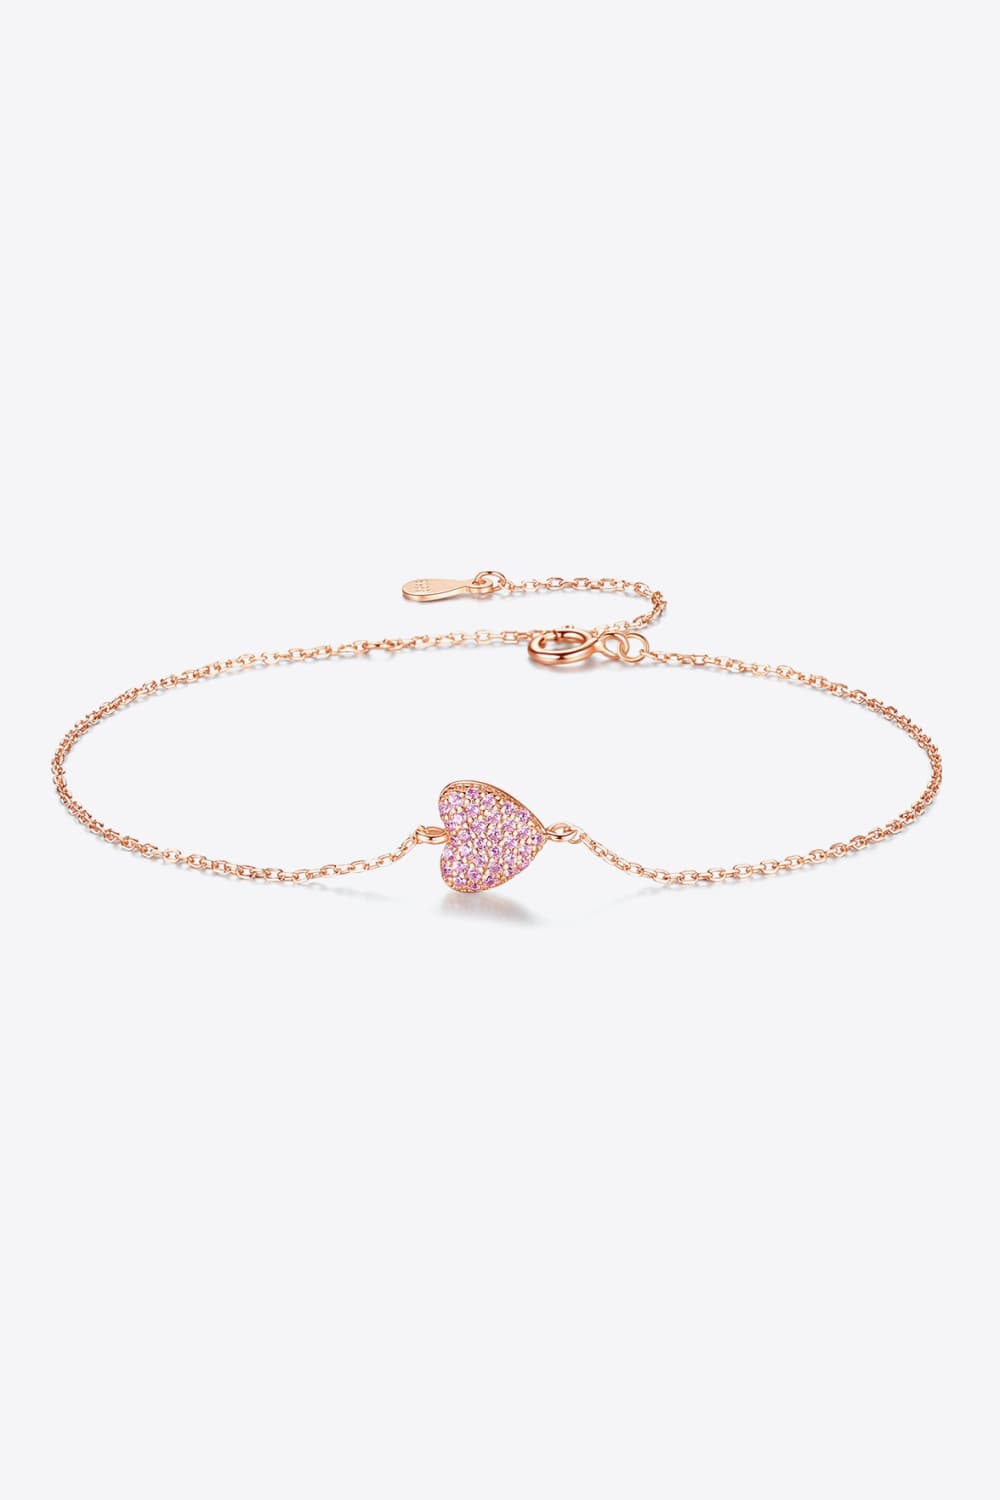 Zircon Heart 925 Sterling Silver Bracelet - Rose Gold / One Size - Women’s Jewelry - Bracelets - 8 - 2024